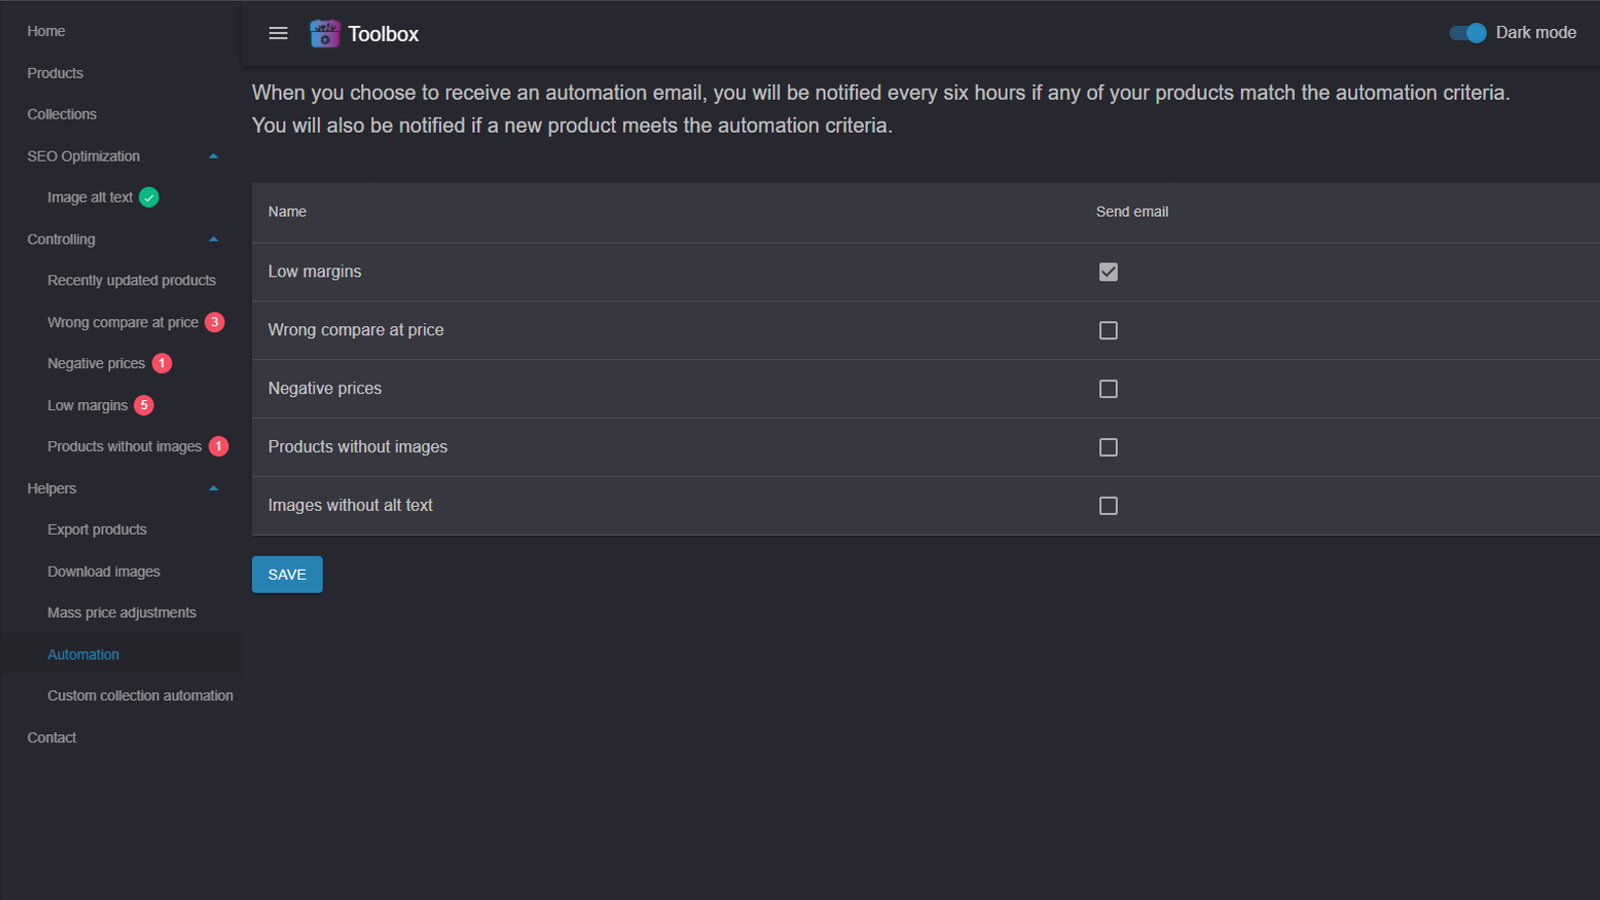 Captura de pantalla mostrando opciones de automatización